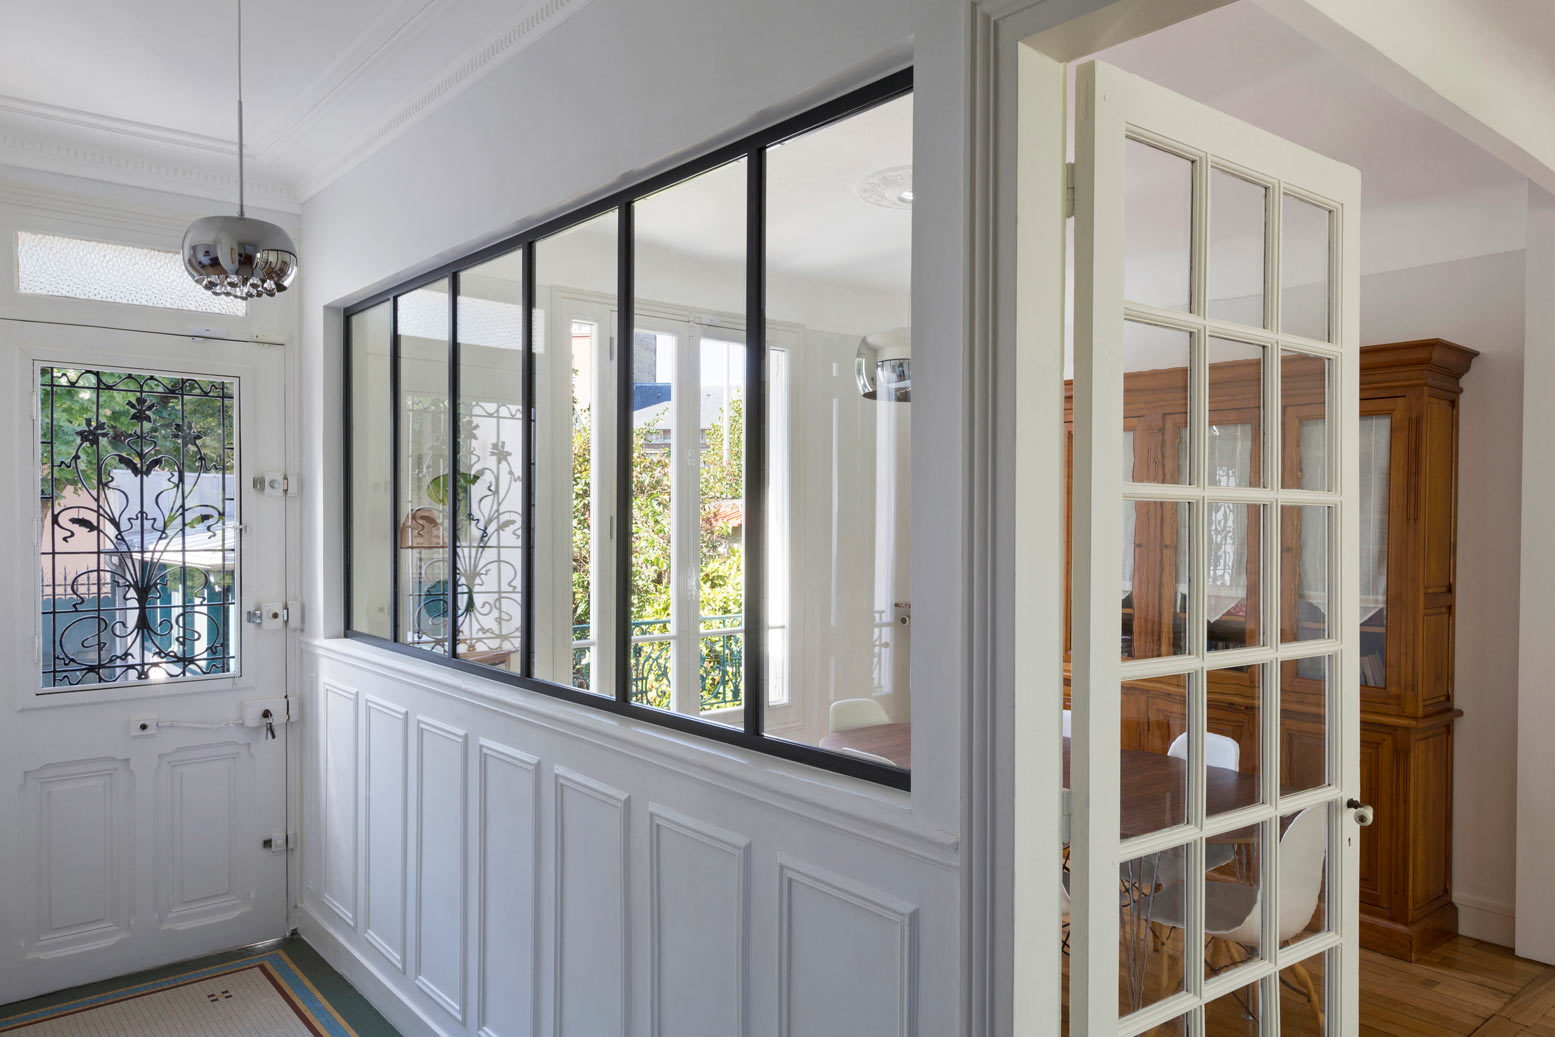 Cloison vitrée de style atelier d'artiste installée dans l'entrée d'une maison